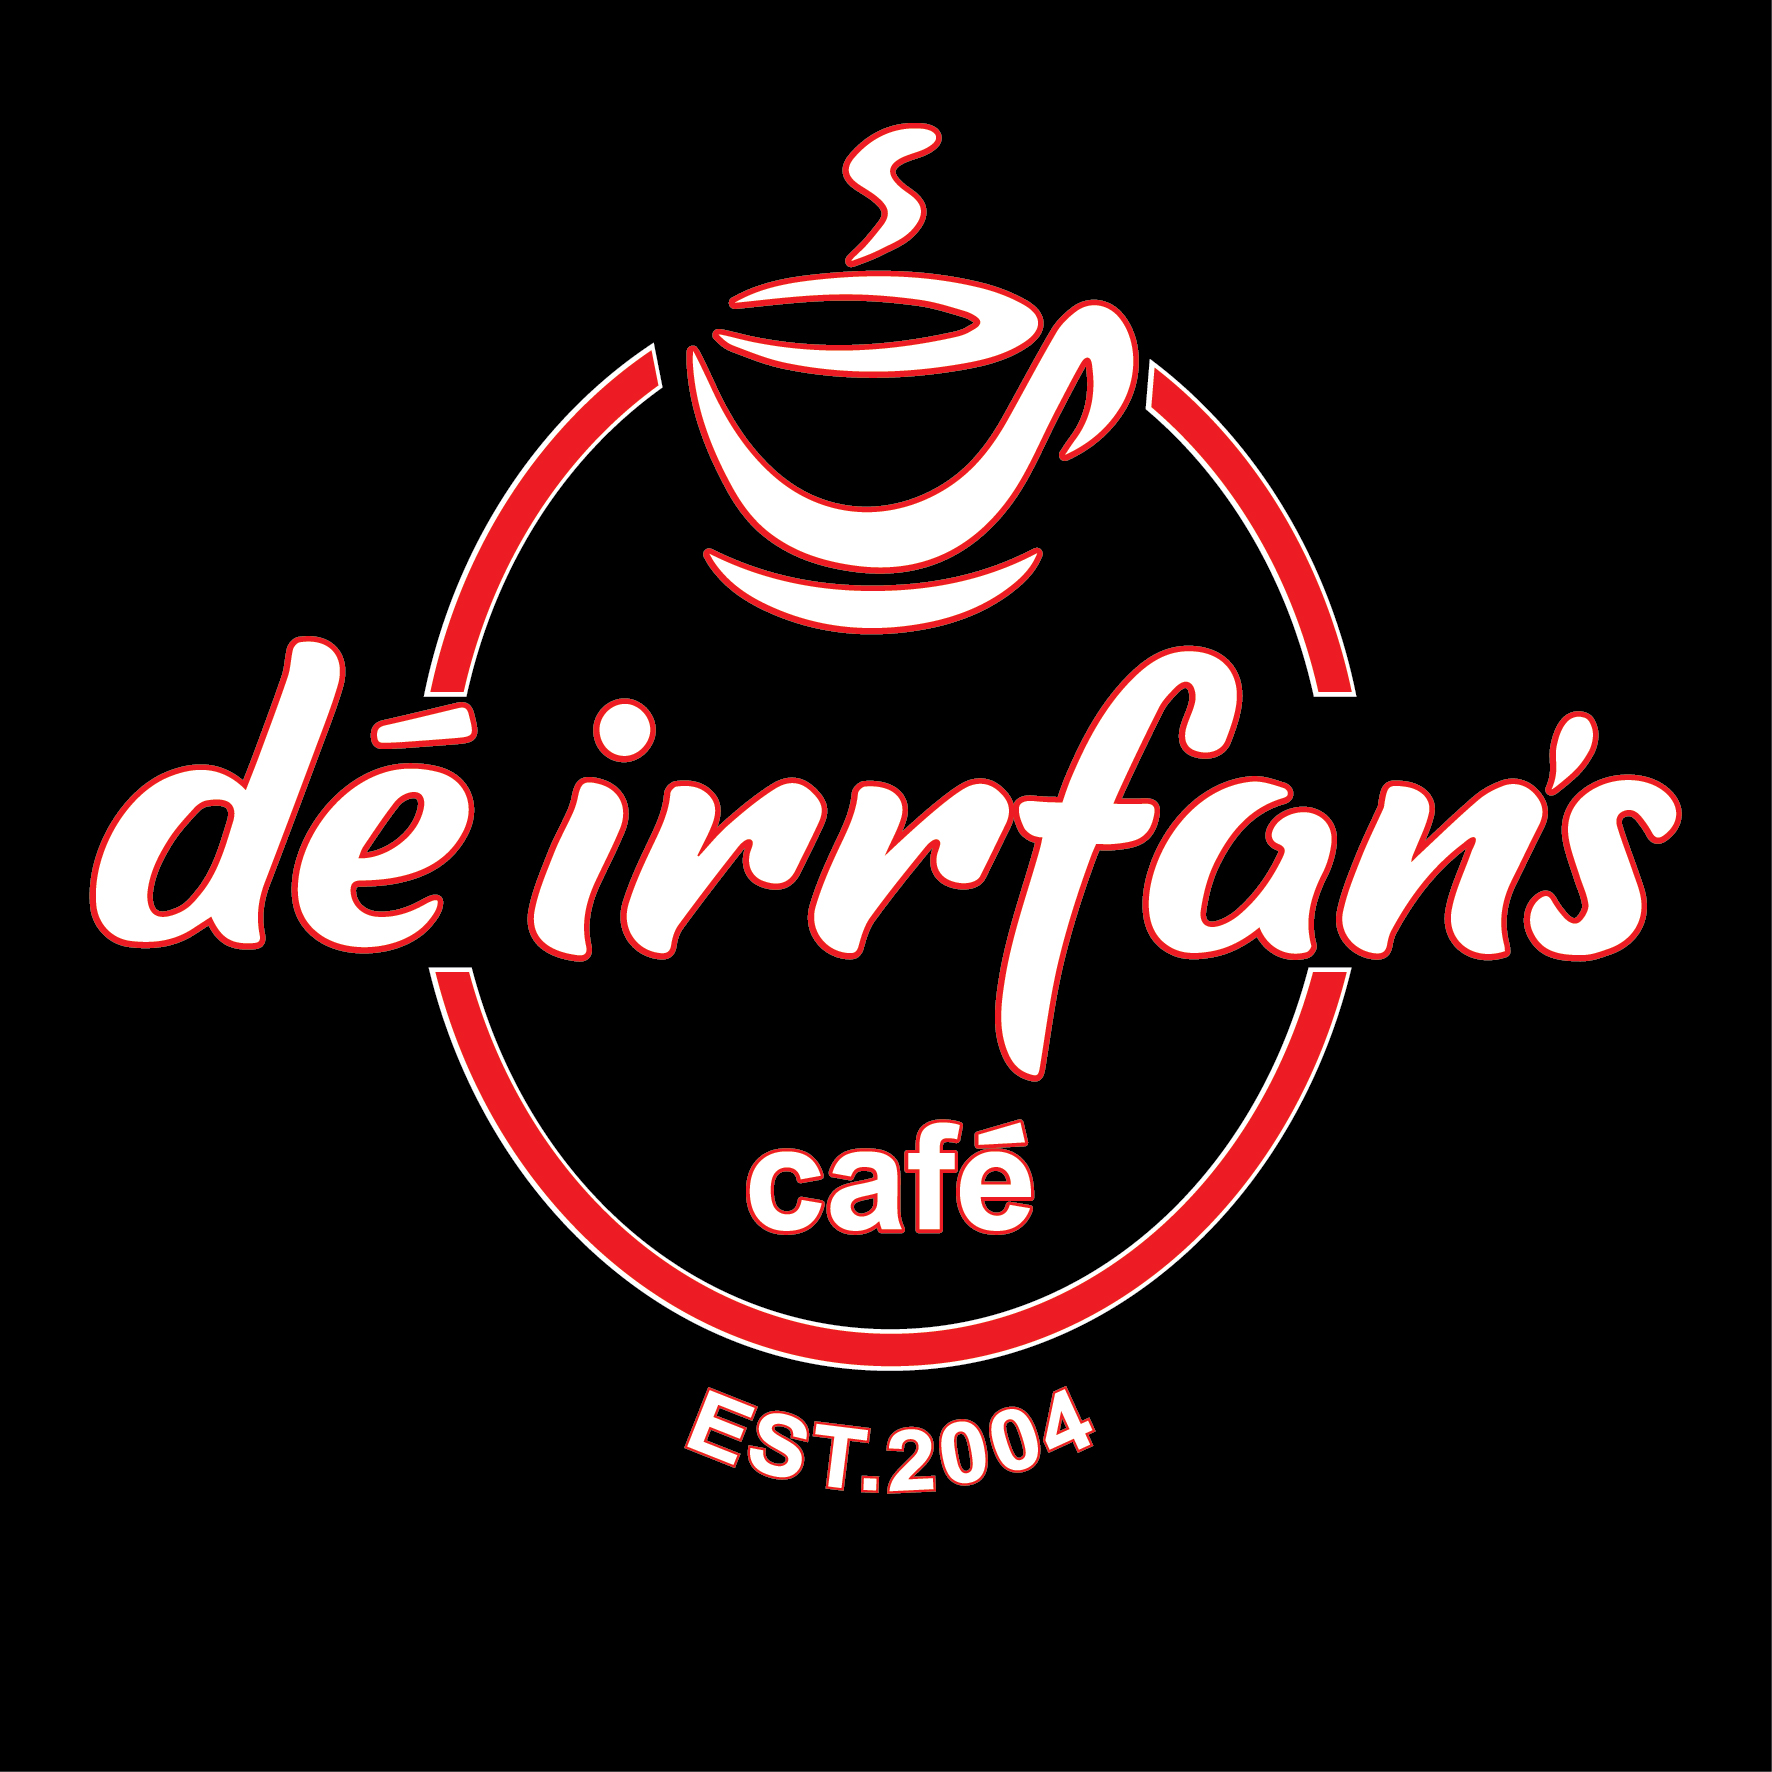 DE IRRFAN'S CAFE